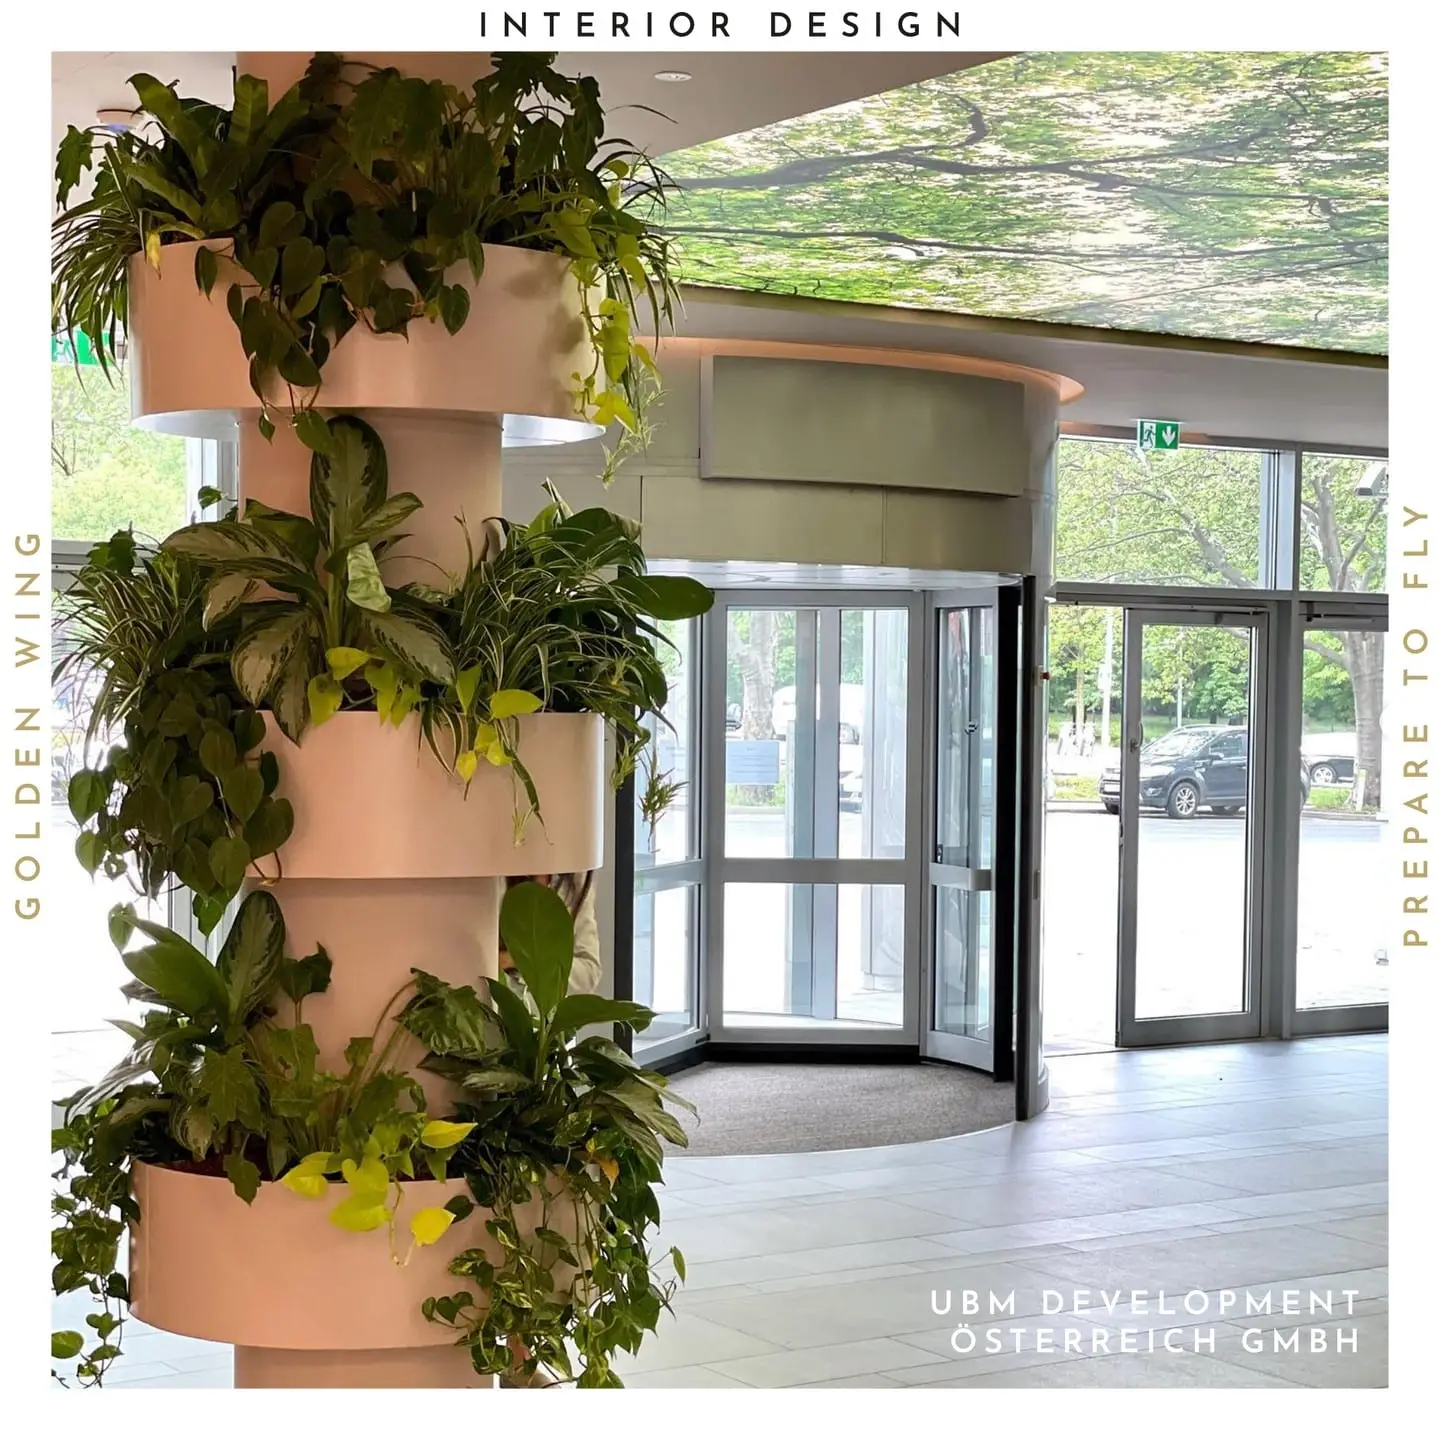 Innovatives Innenraumdesign mit grünen Pflanzen von UBM Development Wien, ein Projekt von Golden Wing, das biophile Designelemente nach Branding zeigt.